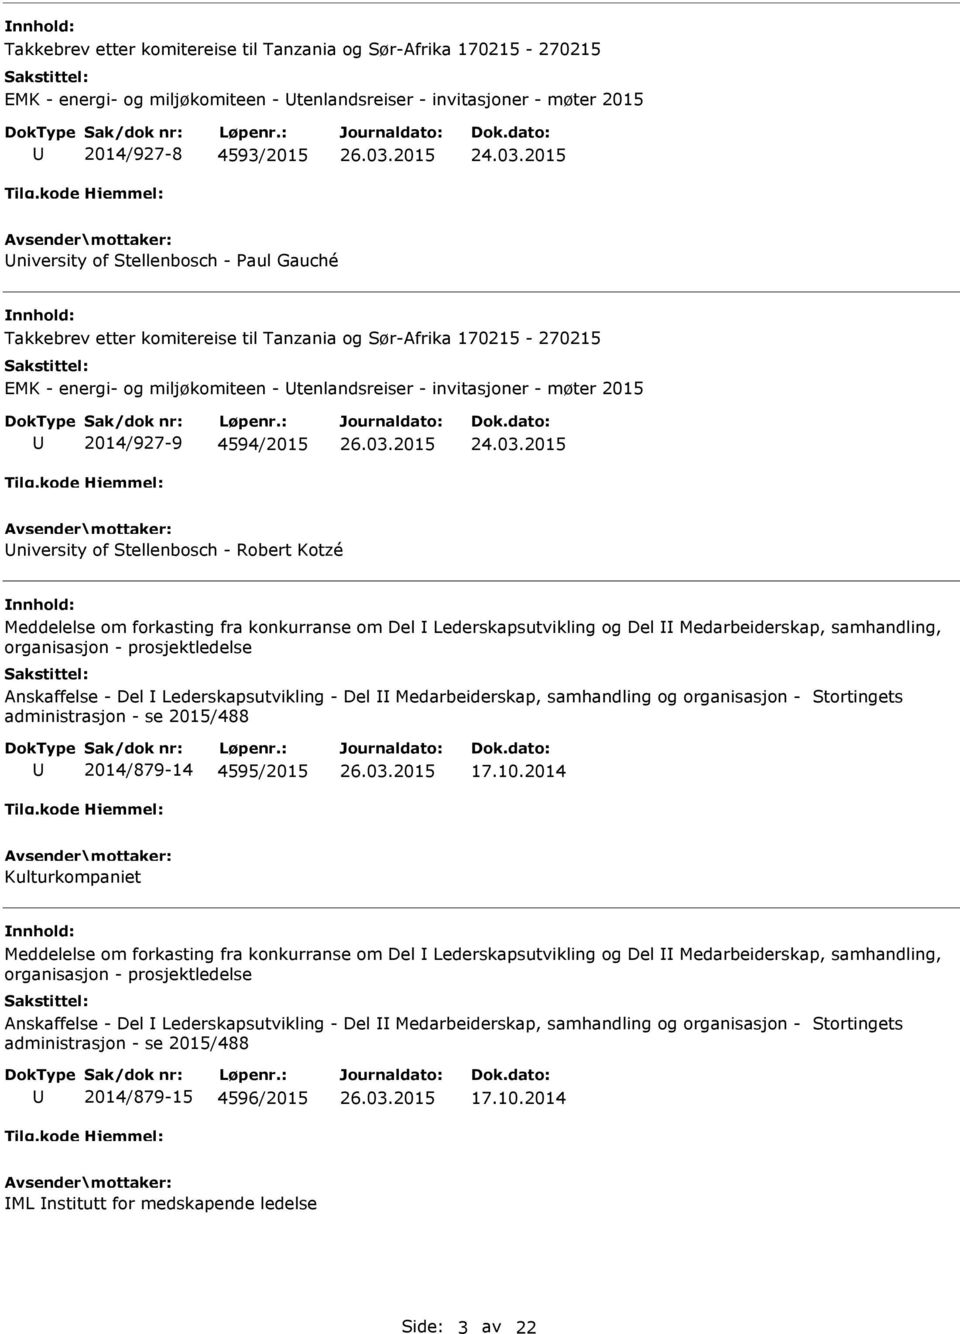 prosjektledelse Anskaffelse - Del Lederskapsutvikling - Del Medarbeiderskap, samhandling og organisasjon - Stortingets 2014/879-14 4595/2015 17.10.